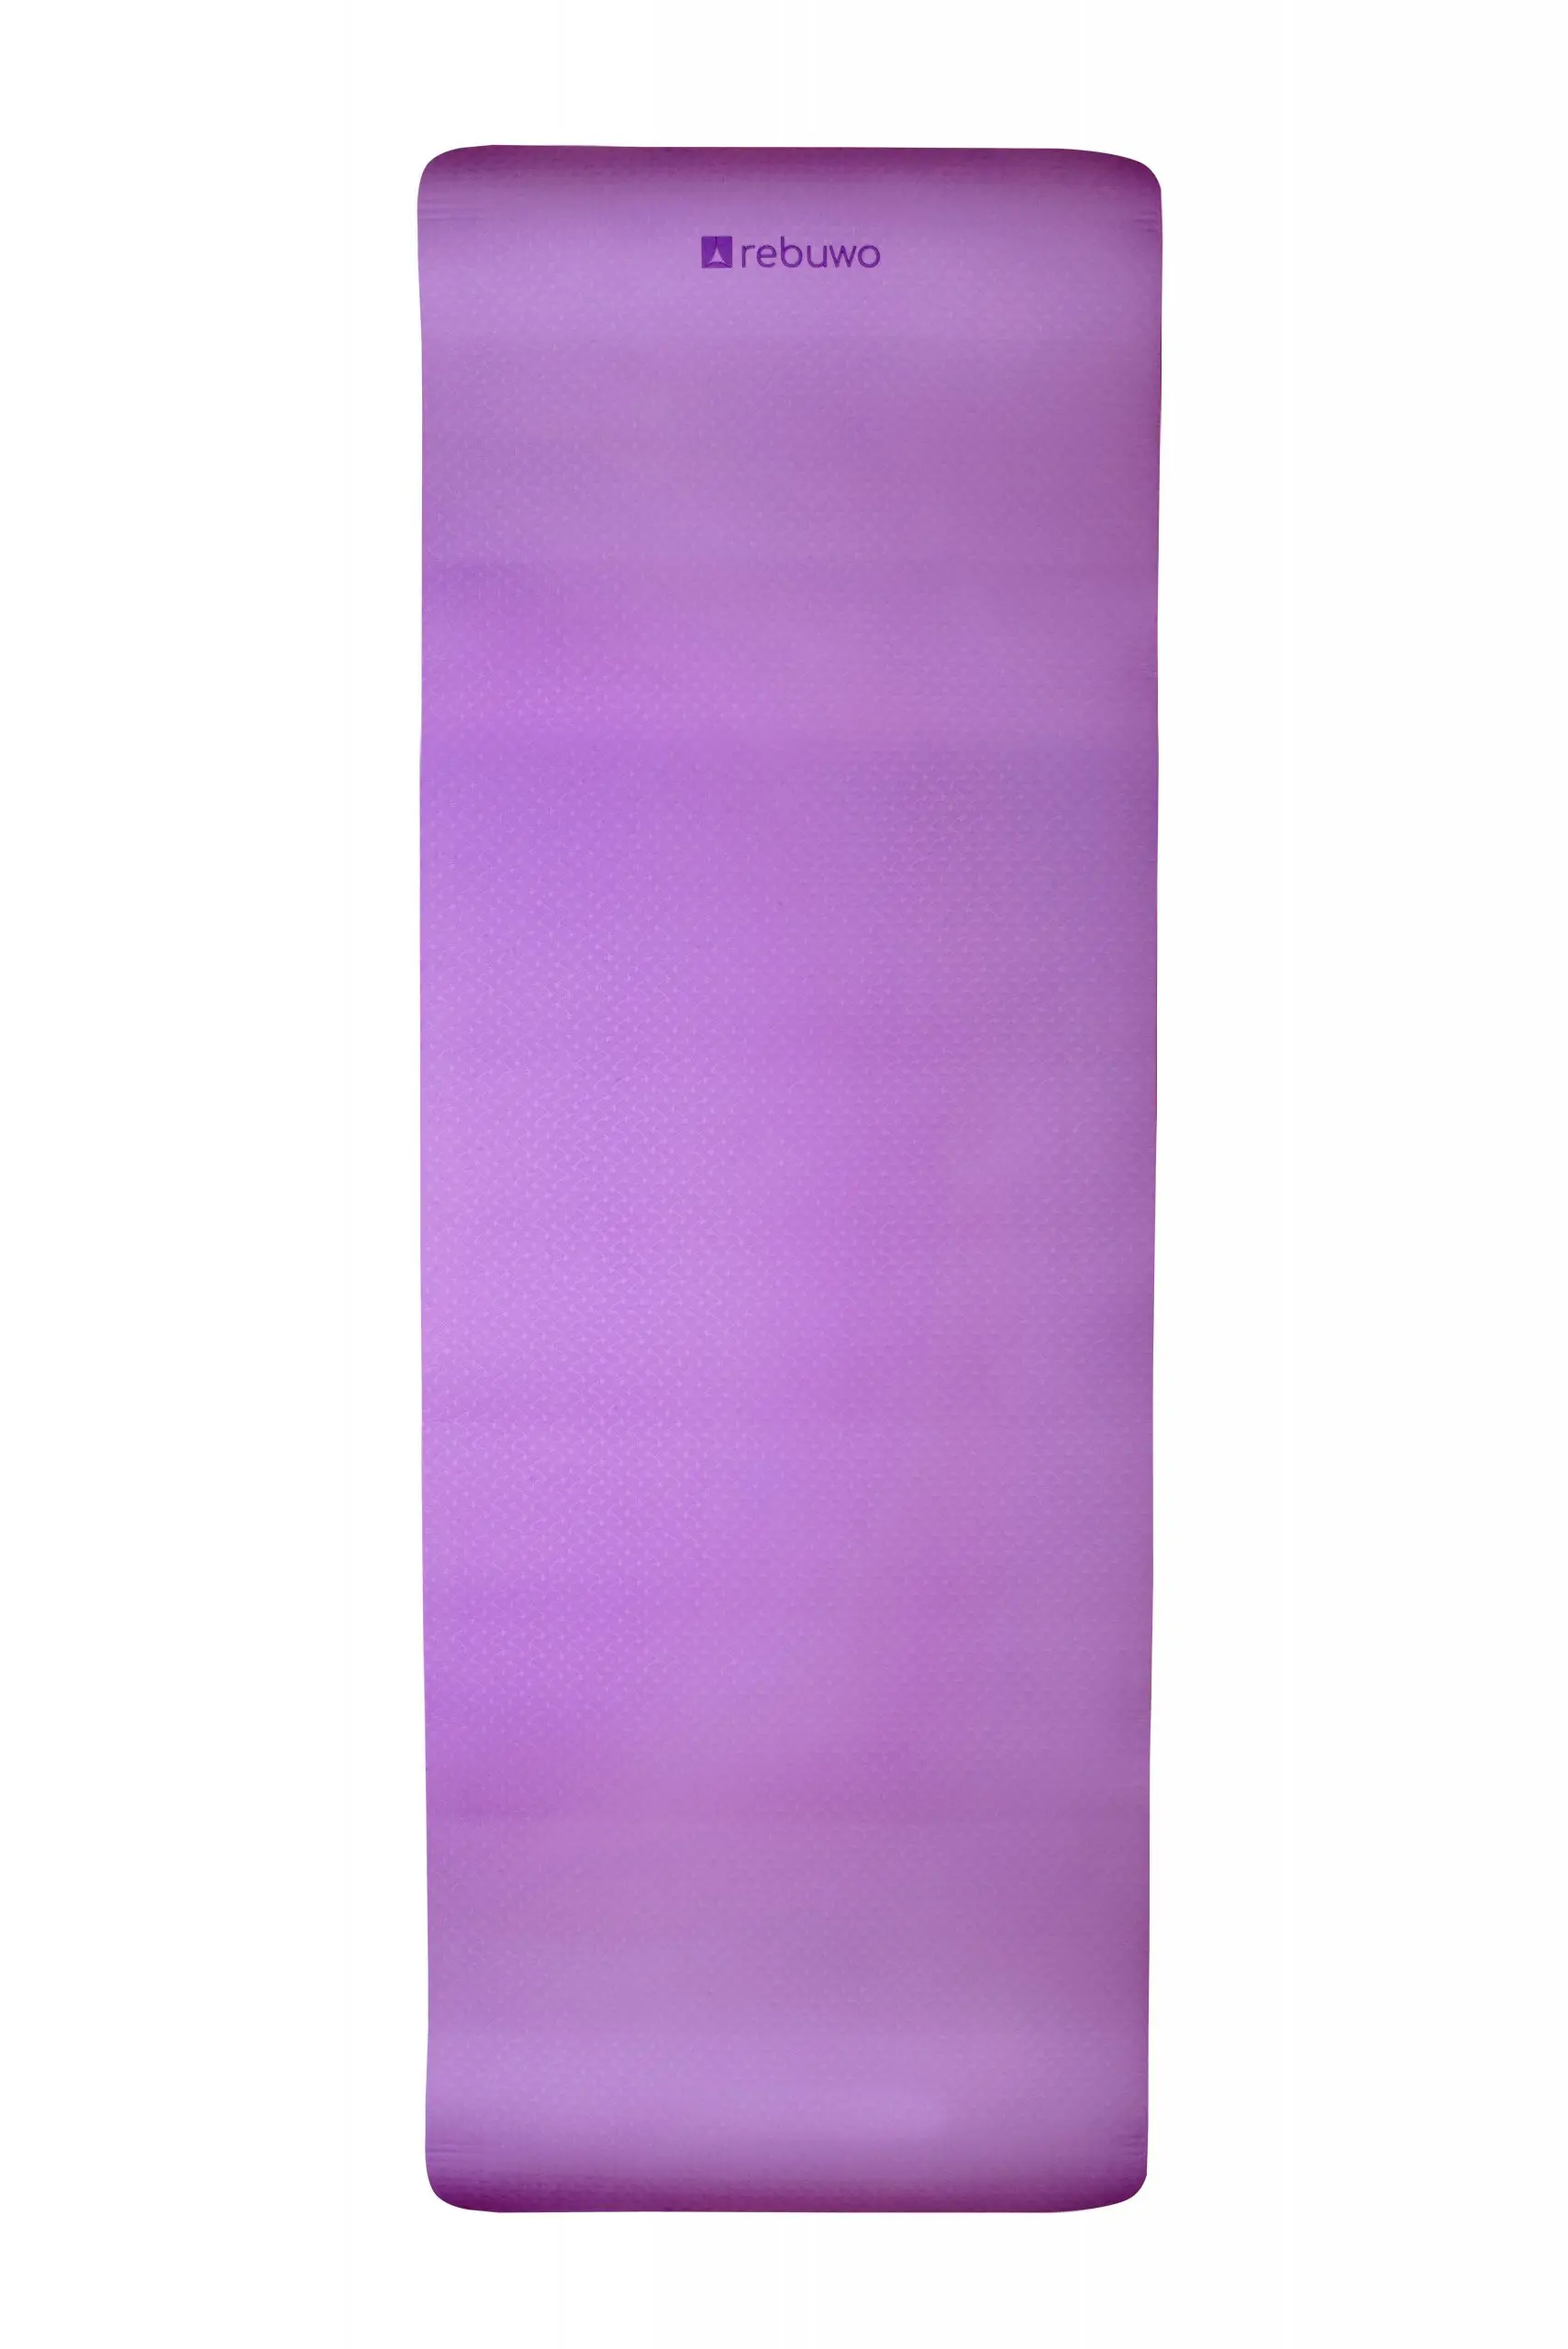 

Rebuwo Yoga/Pilates Double Sided Purple Mat